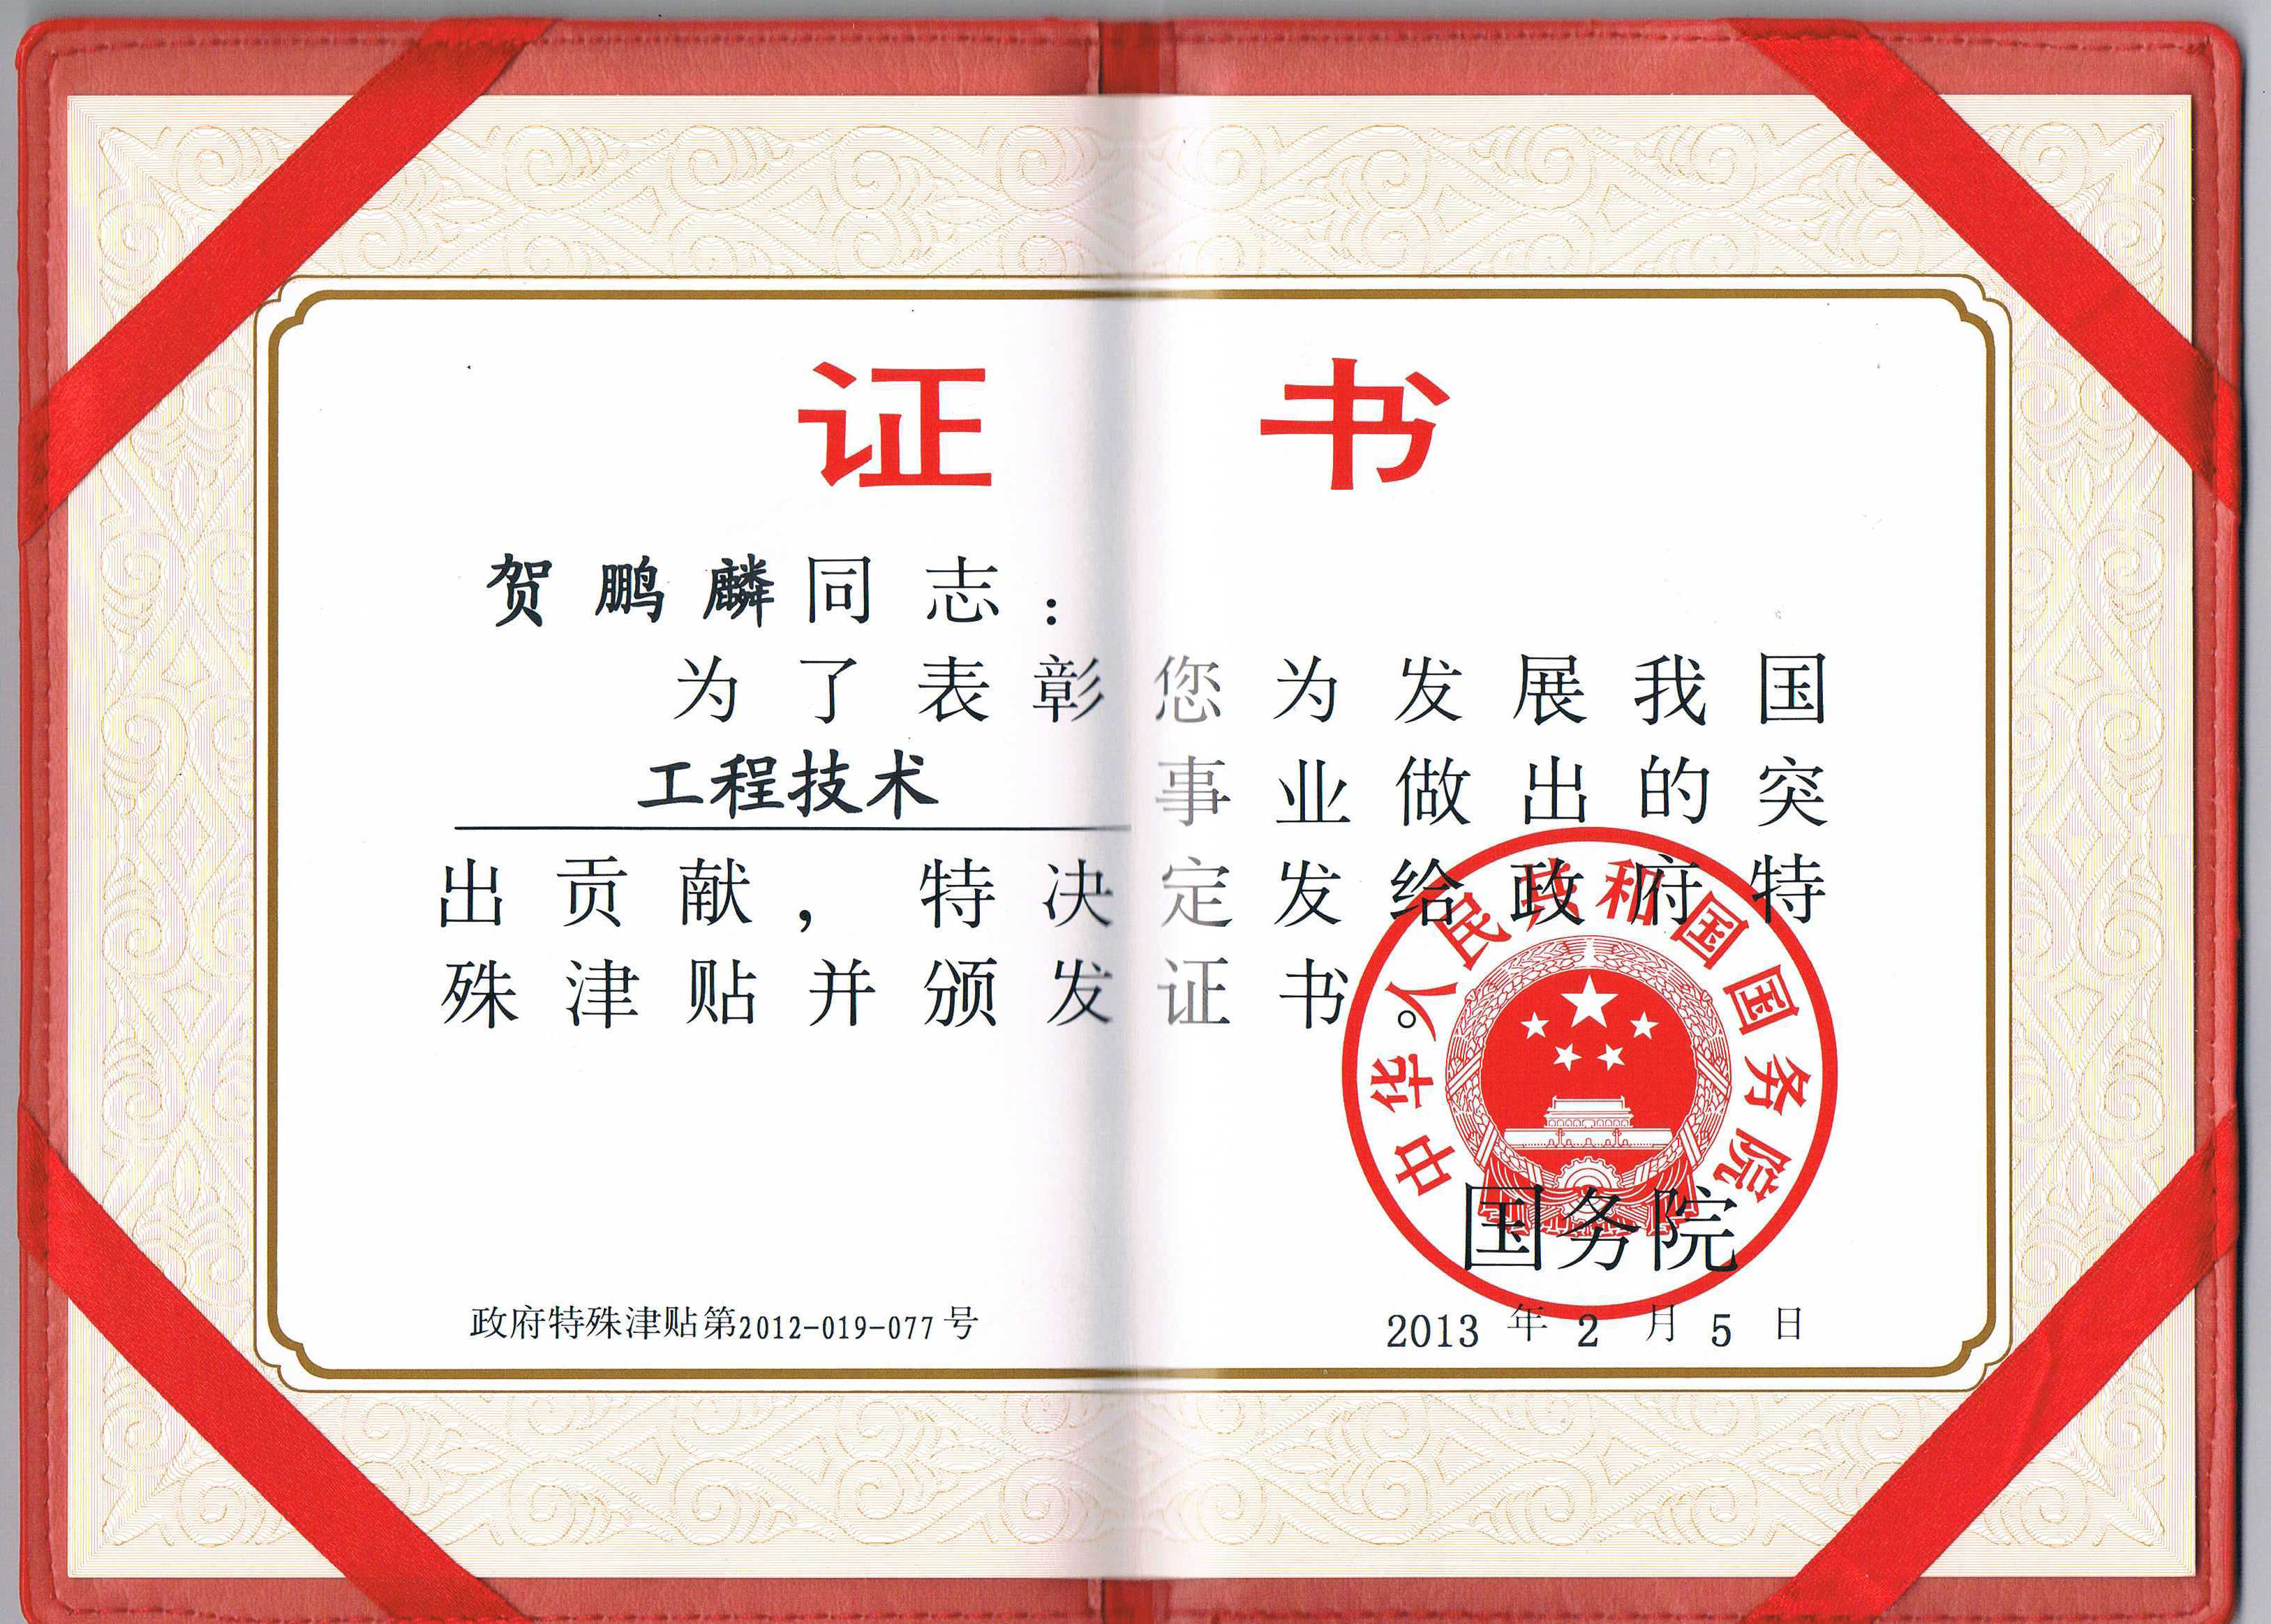 2013年2月获得中国国务院颁发的  “国务院院特殊津贴专家”荣誉称号